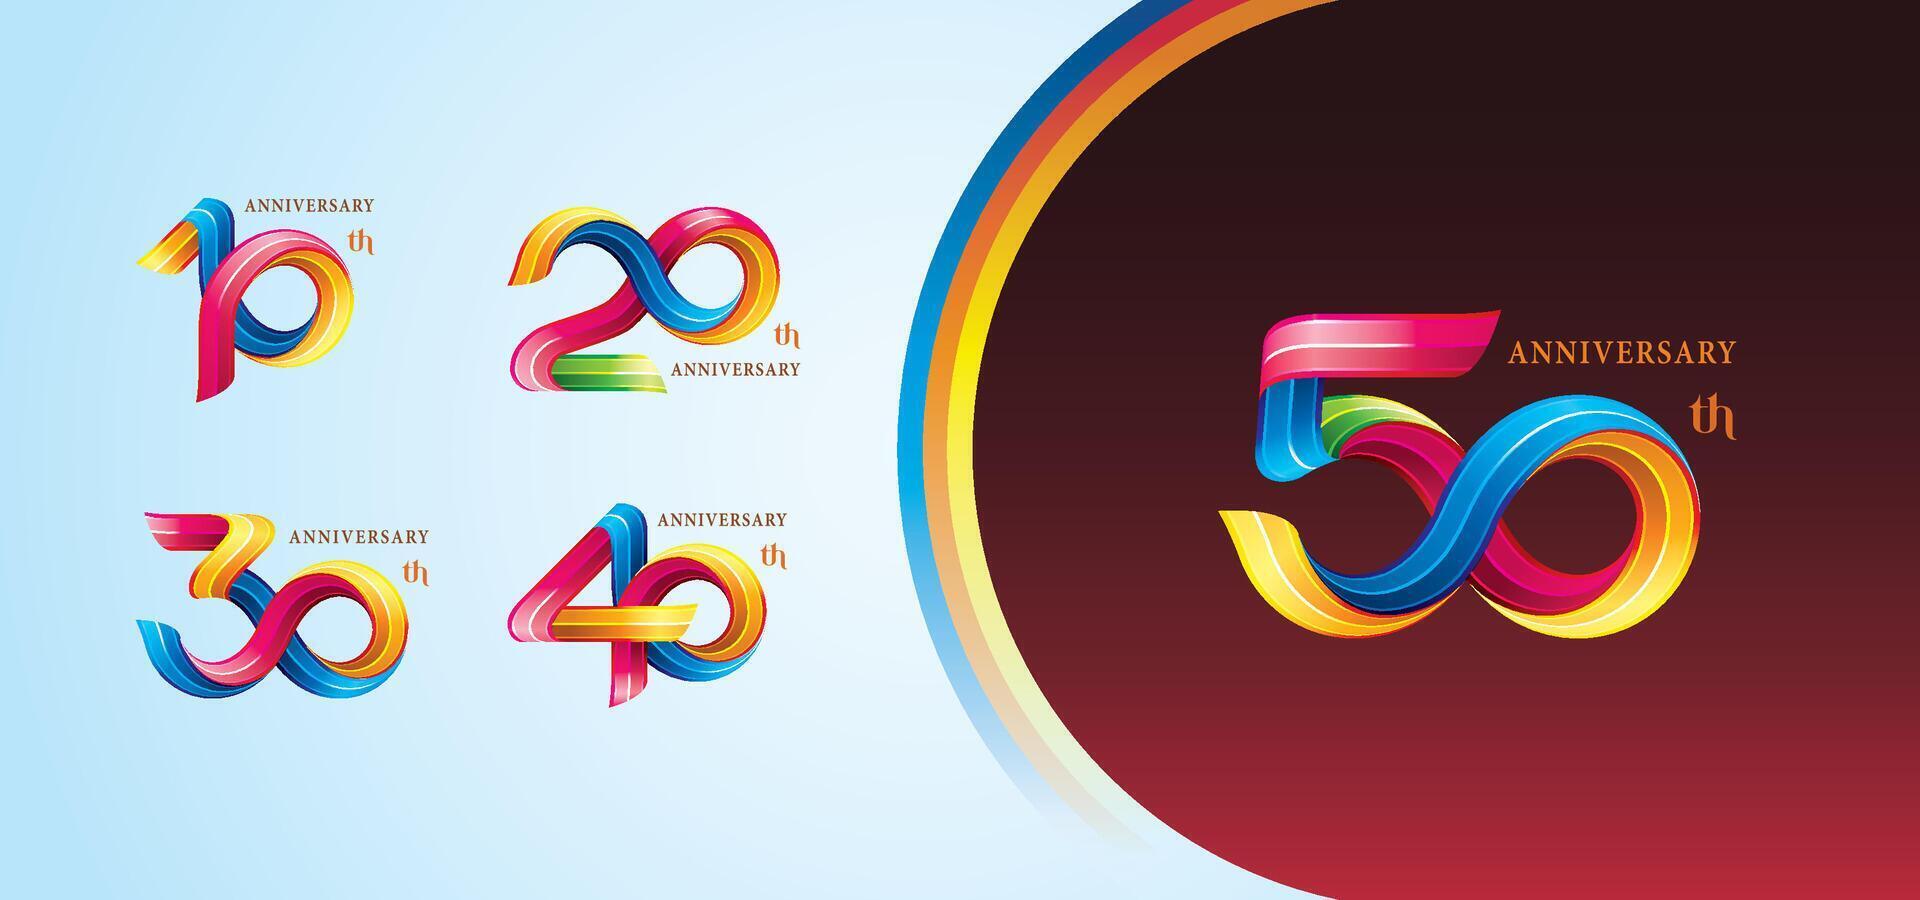 einstellen von 10 zu 50 Jahre Jahrestag bunt Logo Design, 10,20,30,40,50 Jahr, abstrakt Twist Unendlichkeit mehrere Linie bunt. vektor